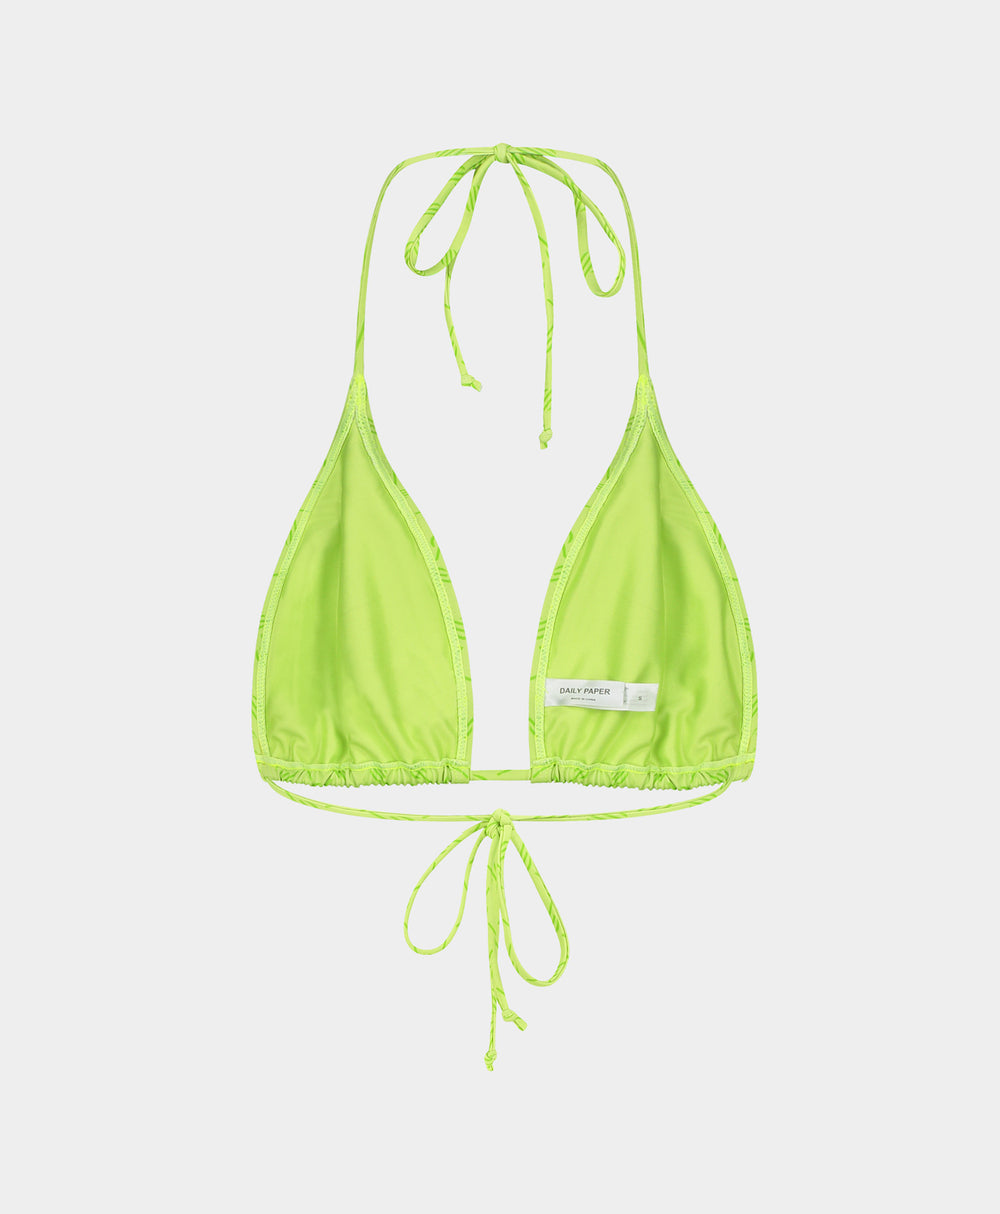 DP - Daiquiri Green Zazi Monogram Bikini Top - Packshot - Rear